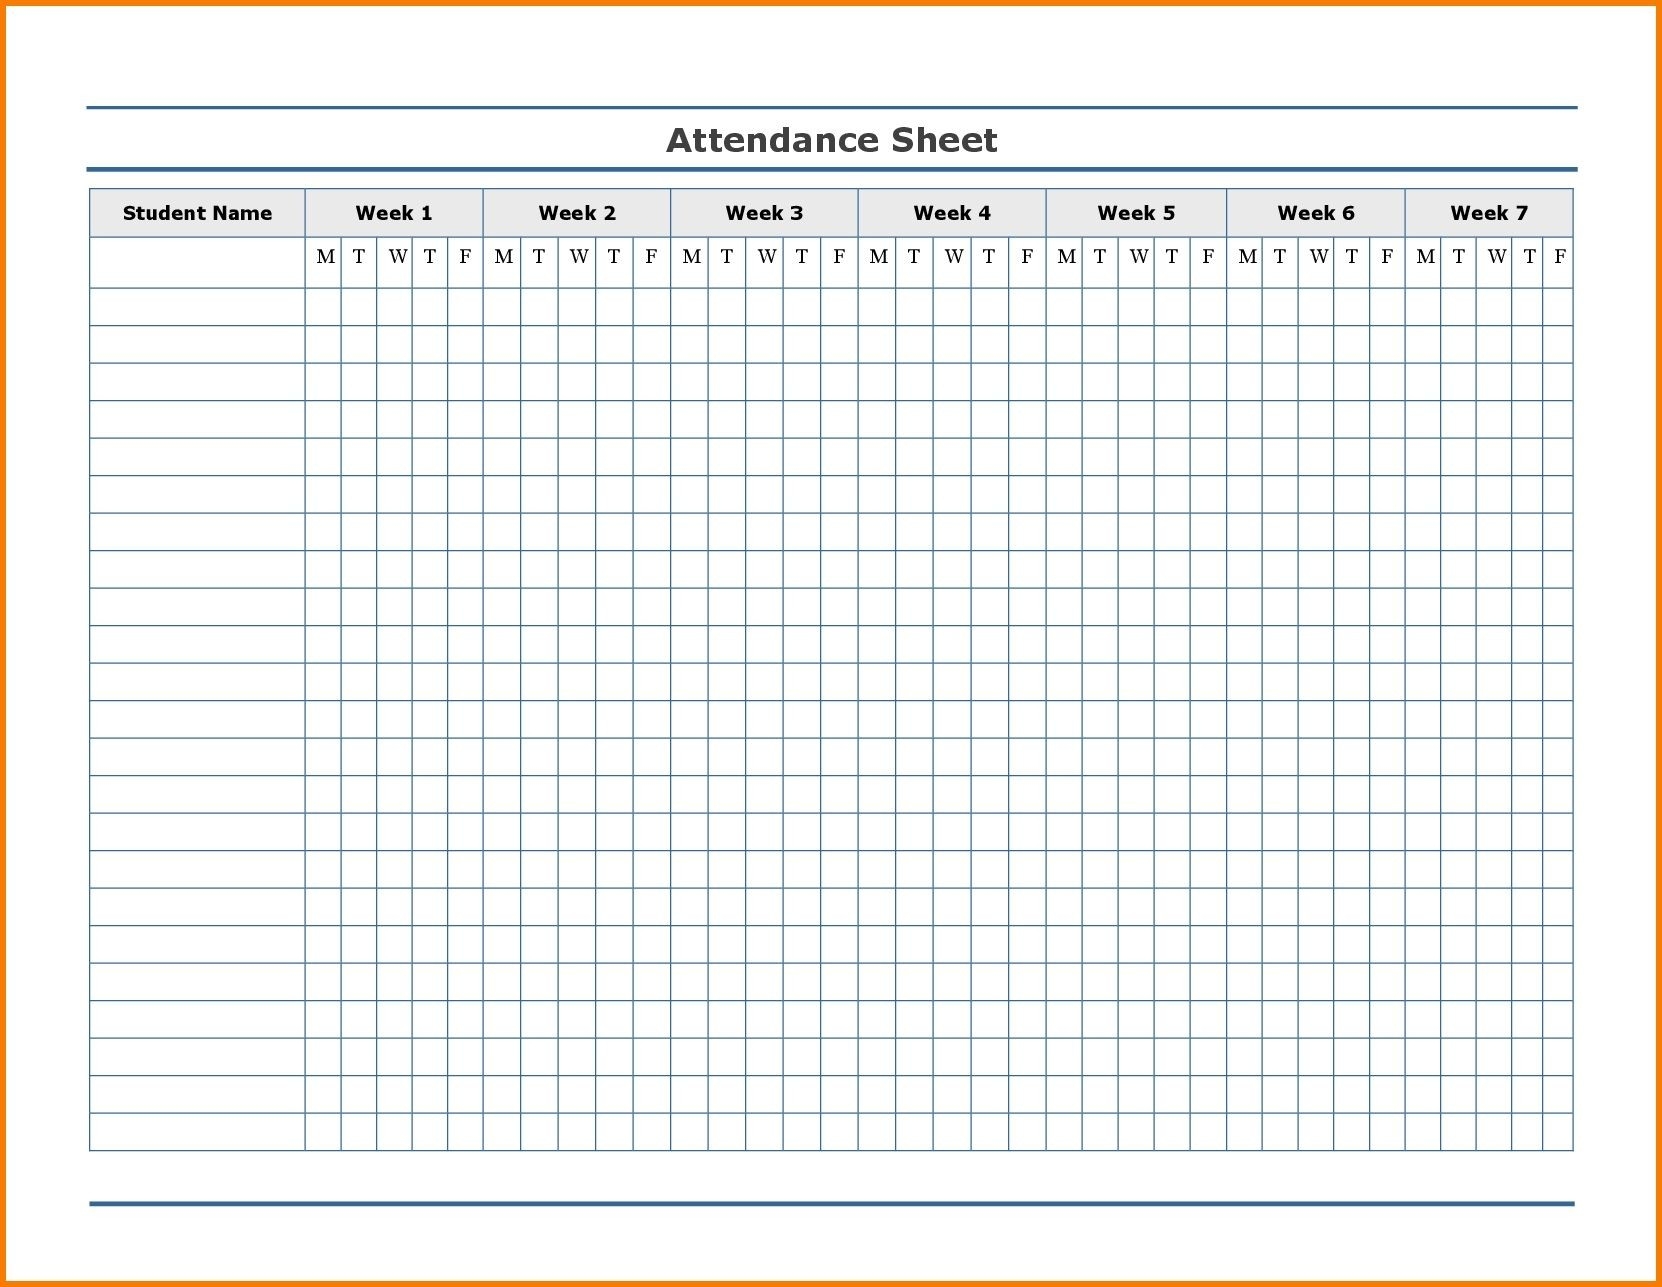 Free Employee Attendance Calendar | Employee Tracker-Employee Absence Calendar Template